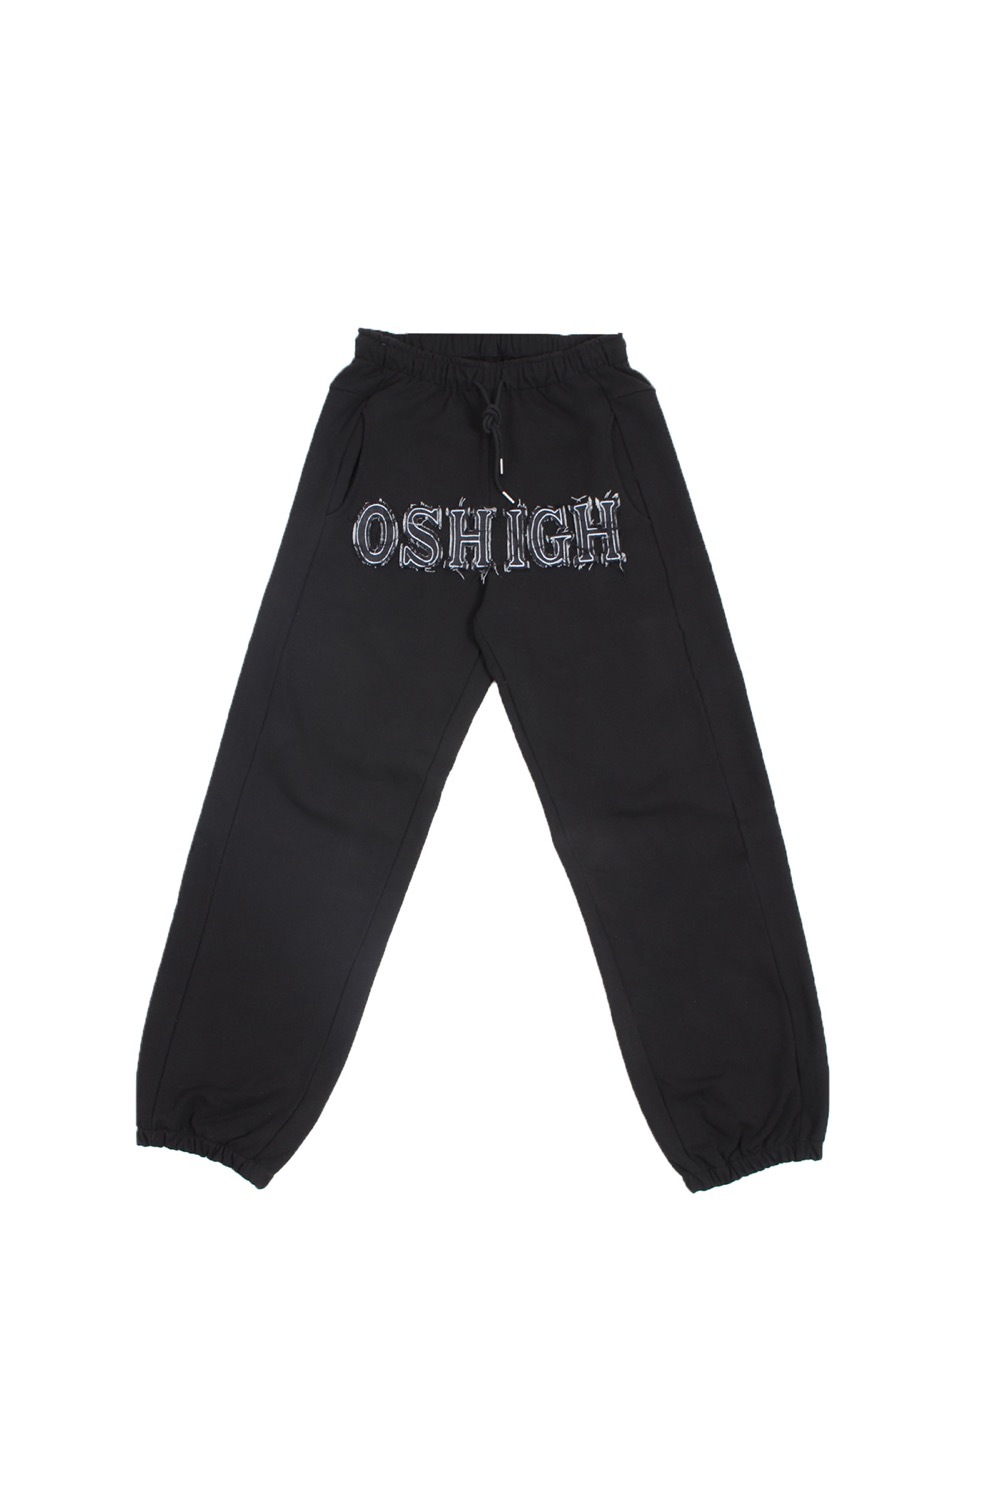 New Denim Mix Jogger Pants (Black)